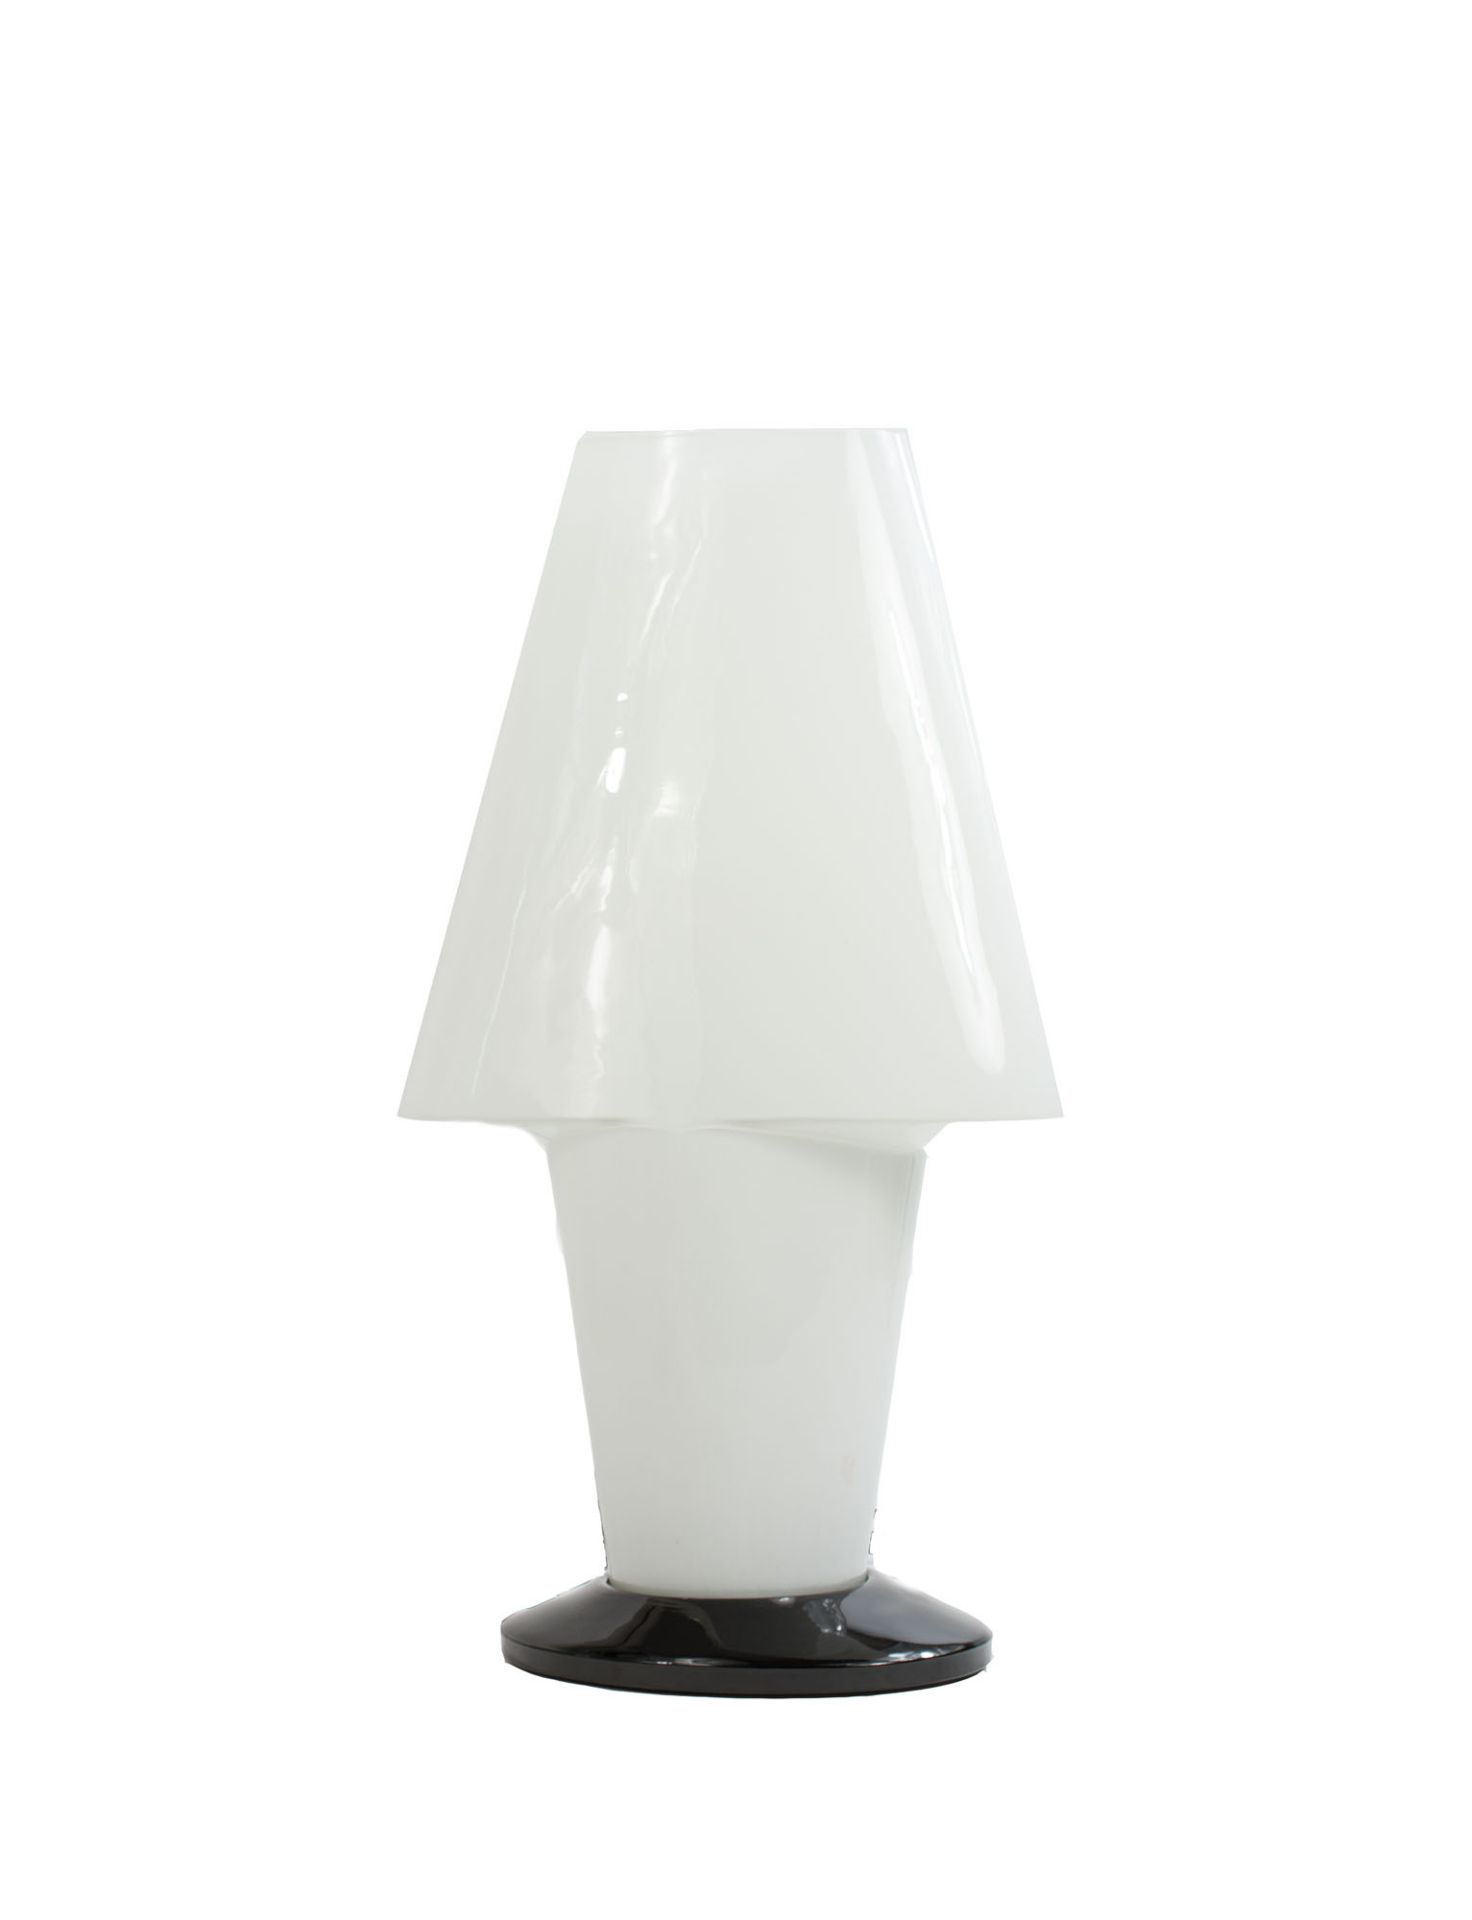 TischlampeItalien, Opalglas, schwarzer Stand, Höhe 60 cm, funktionsfähig